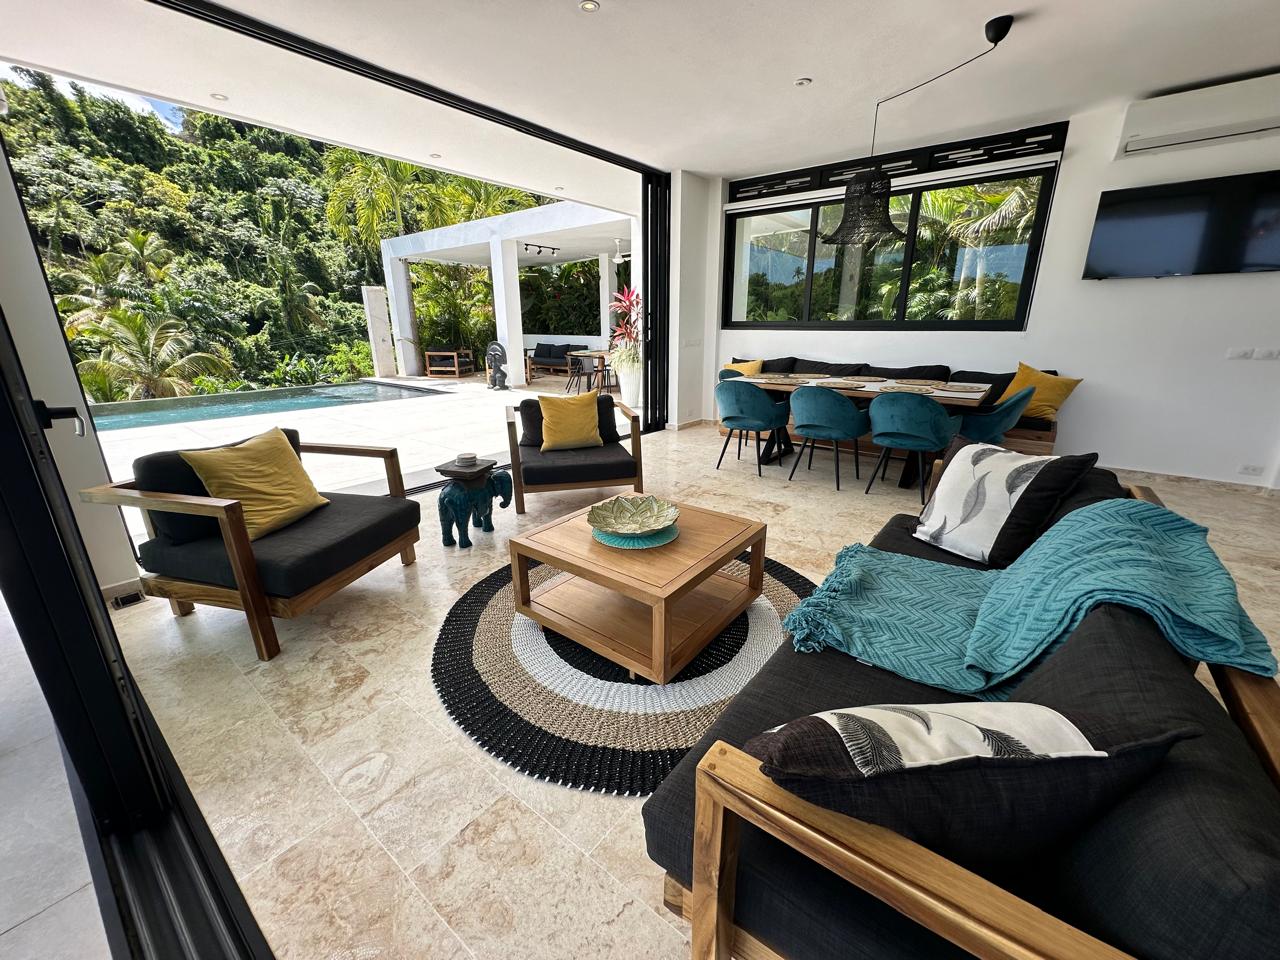 Splendid 4-bedroom villa with ocean vista - Las Terrenas Real Estate - Ocean Edge Dominican Republic (22)